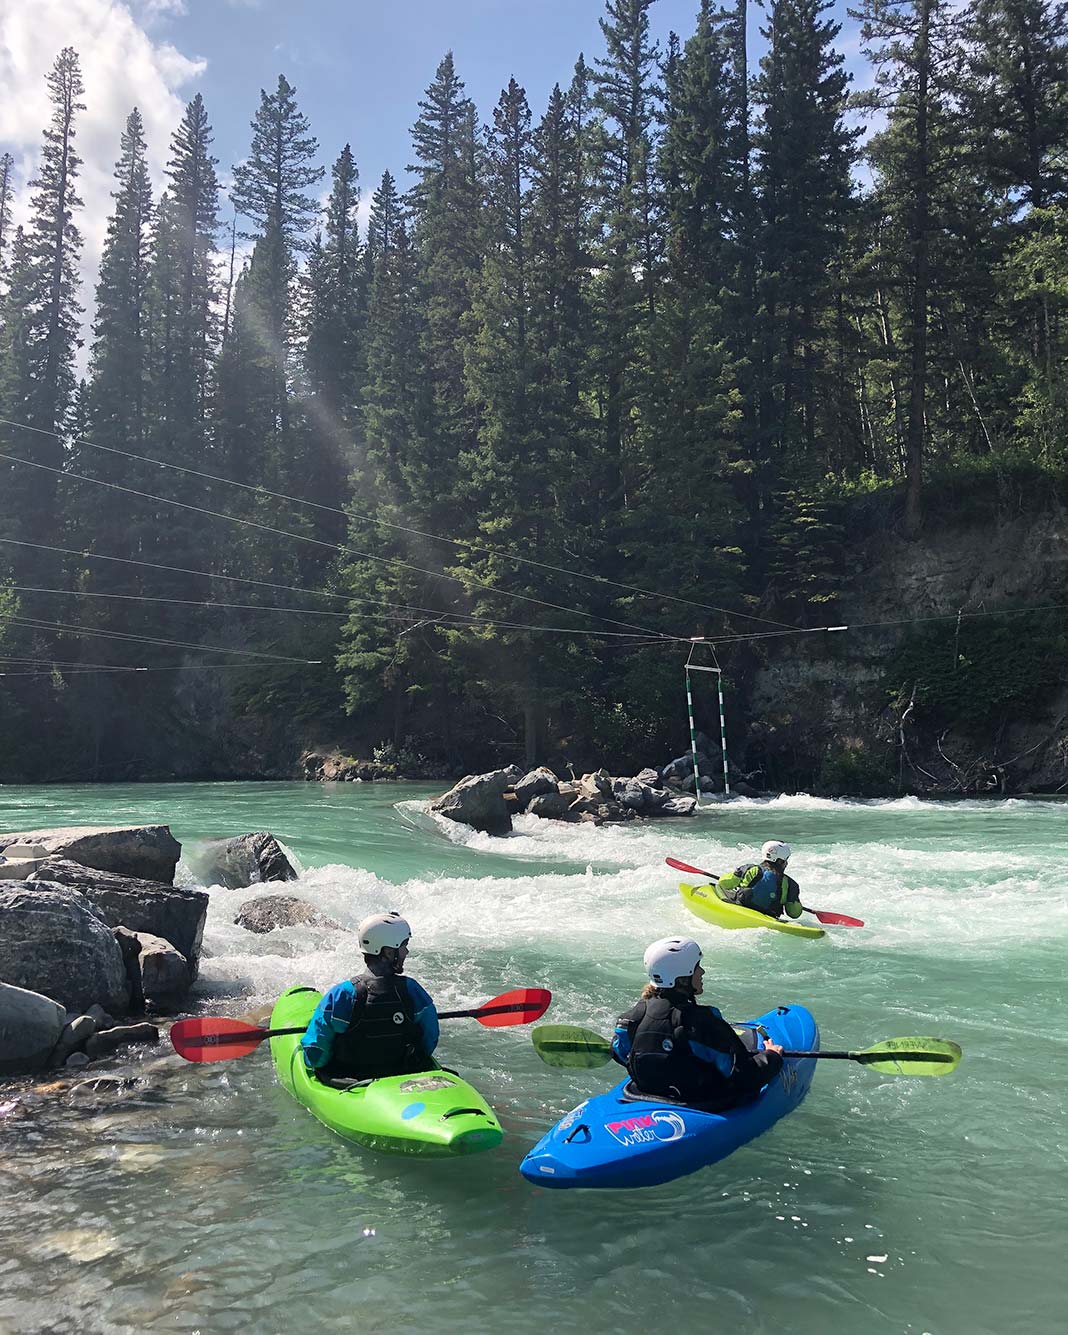 Three people whitewater kayaking on river